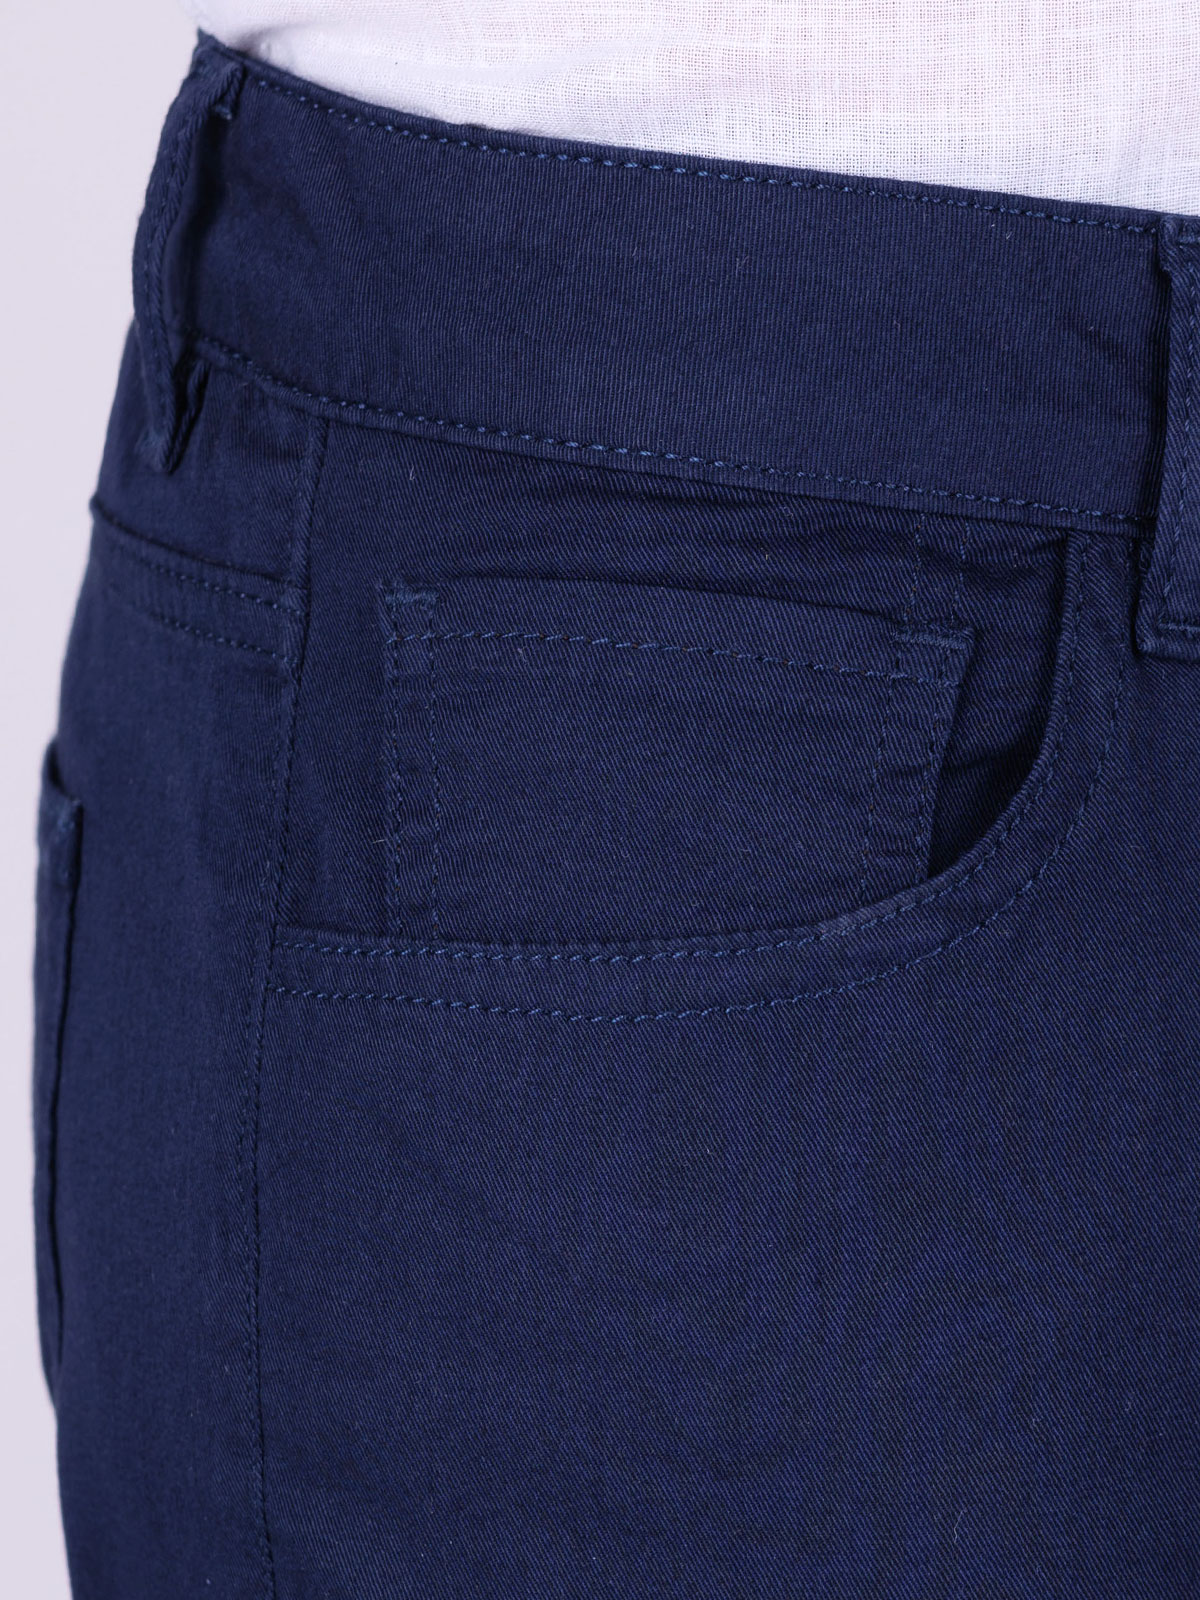 Pantaloni în albastru - 60285 € 66.37 img2